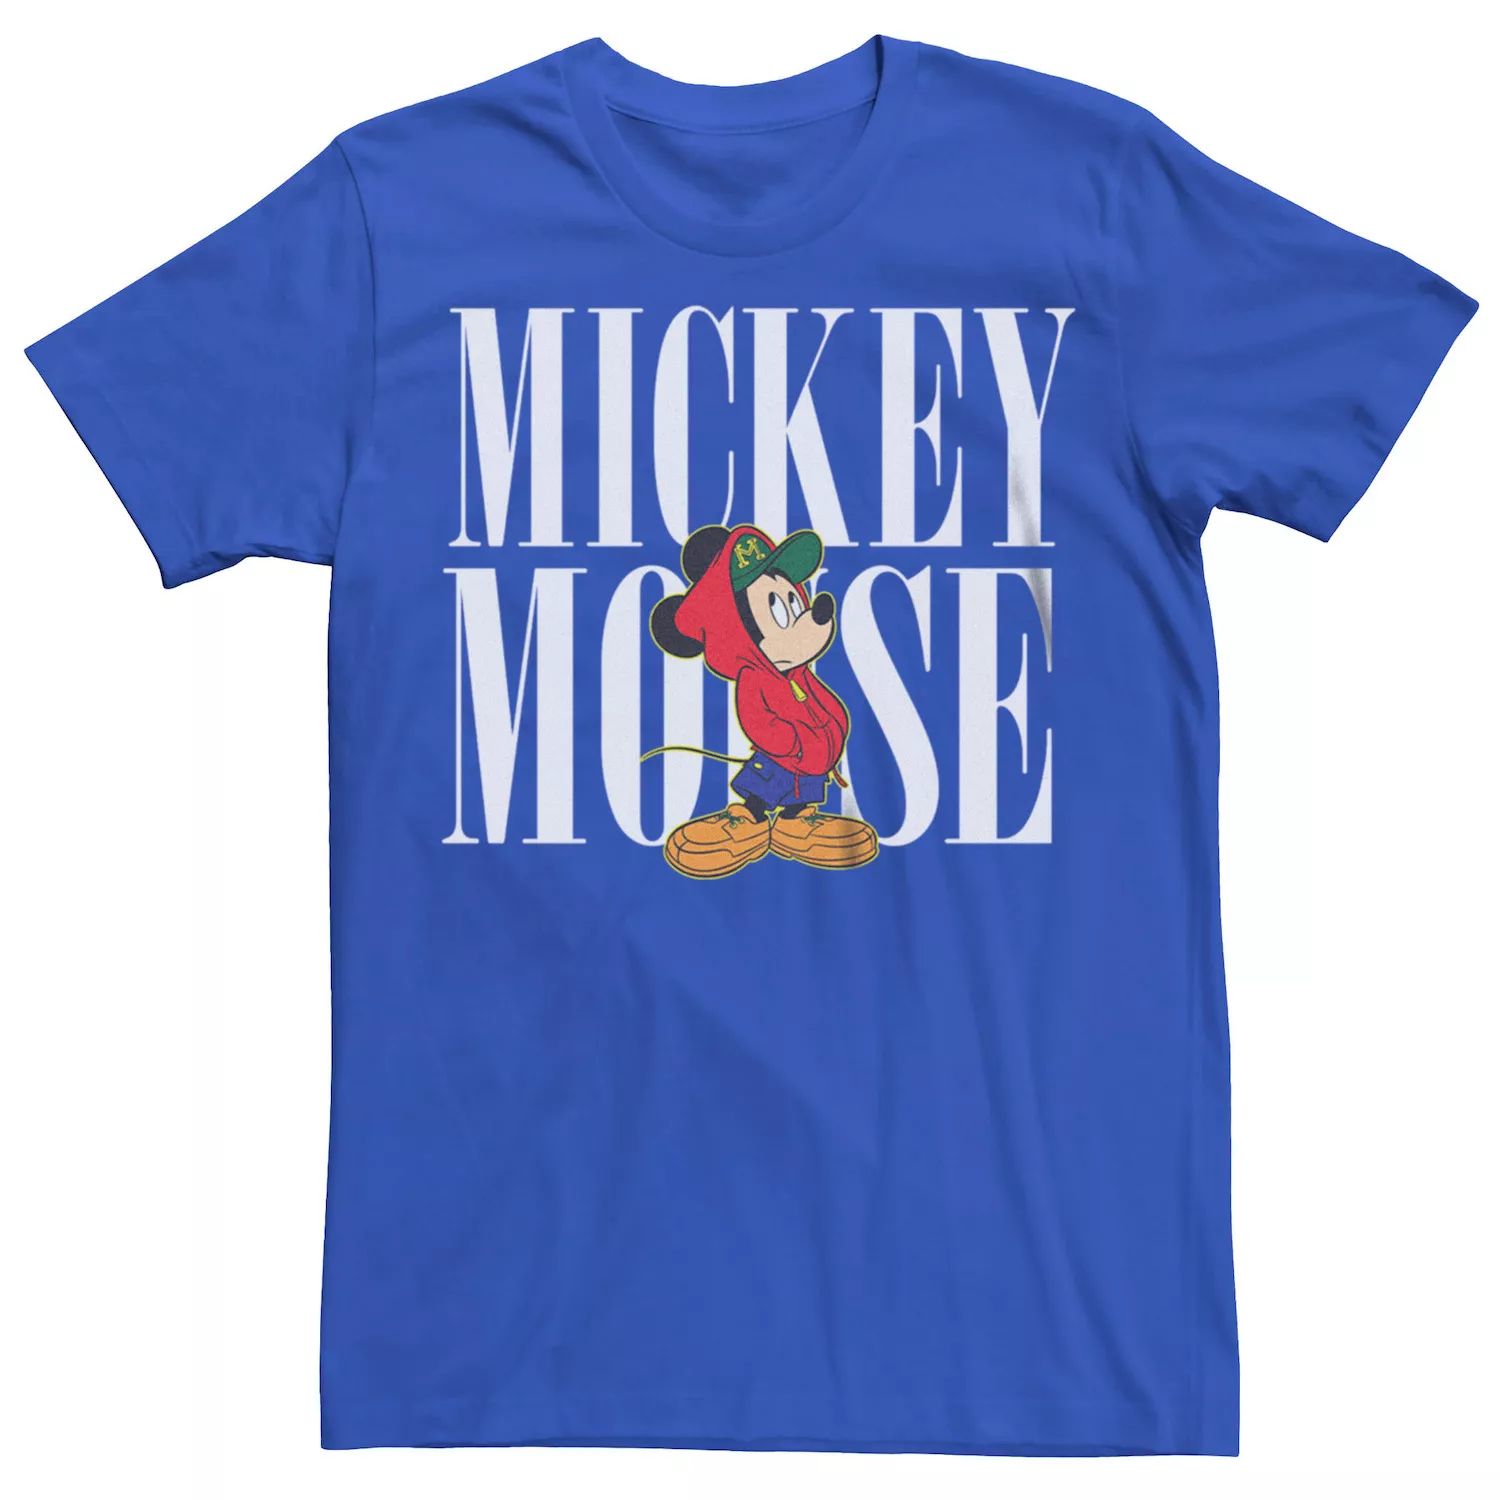 Мужская модная футболка Disney's с Микки Маусом в стиле 90-х годов Licensed Character майка с микки маусом disney mickey для юниоров в стиле 90 х годов licensed character